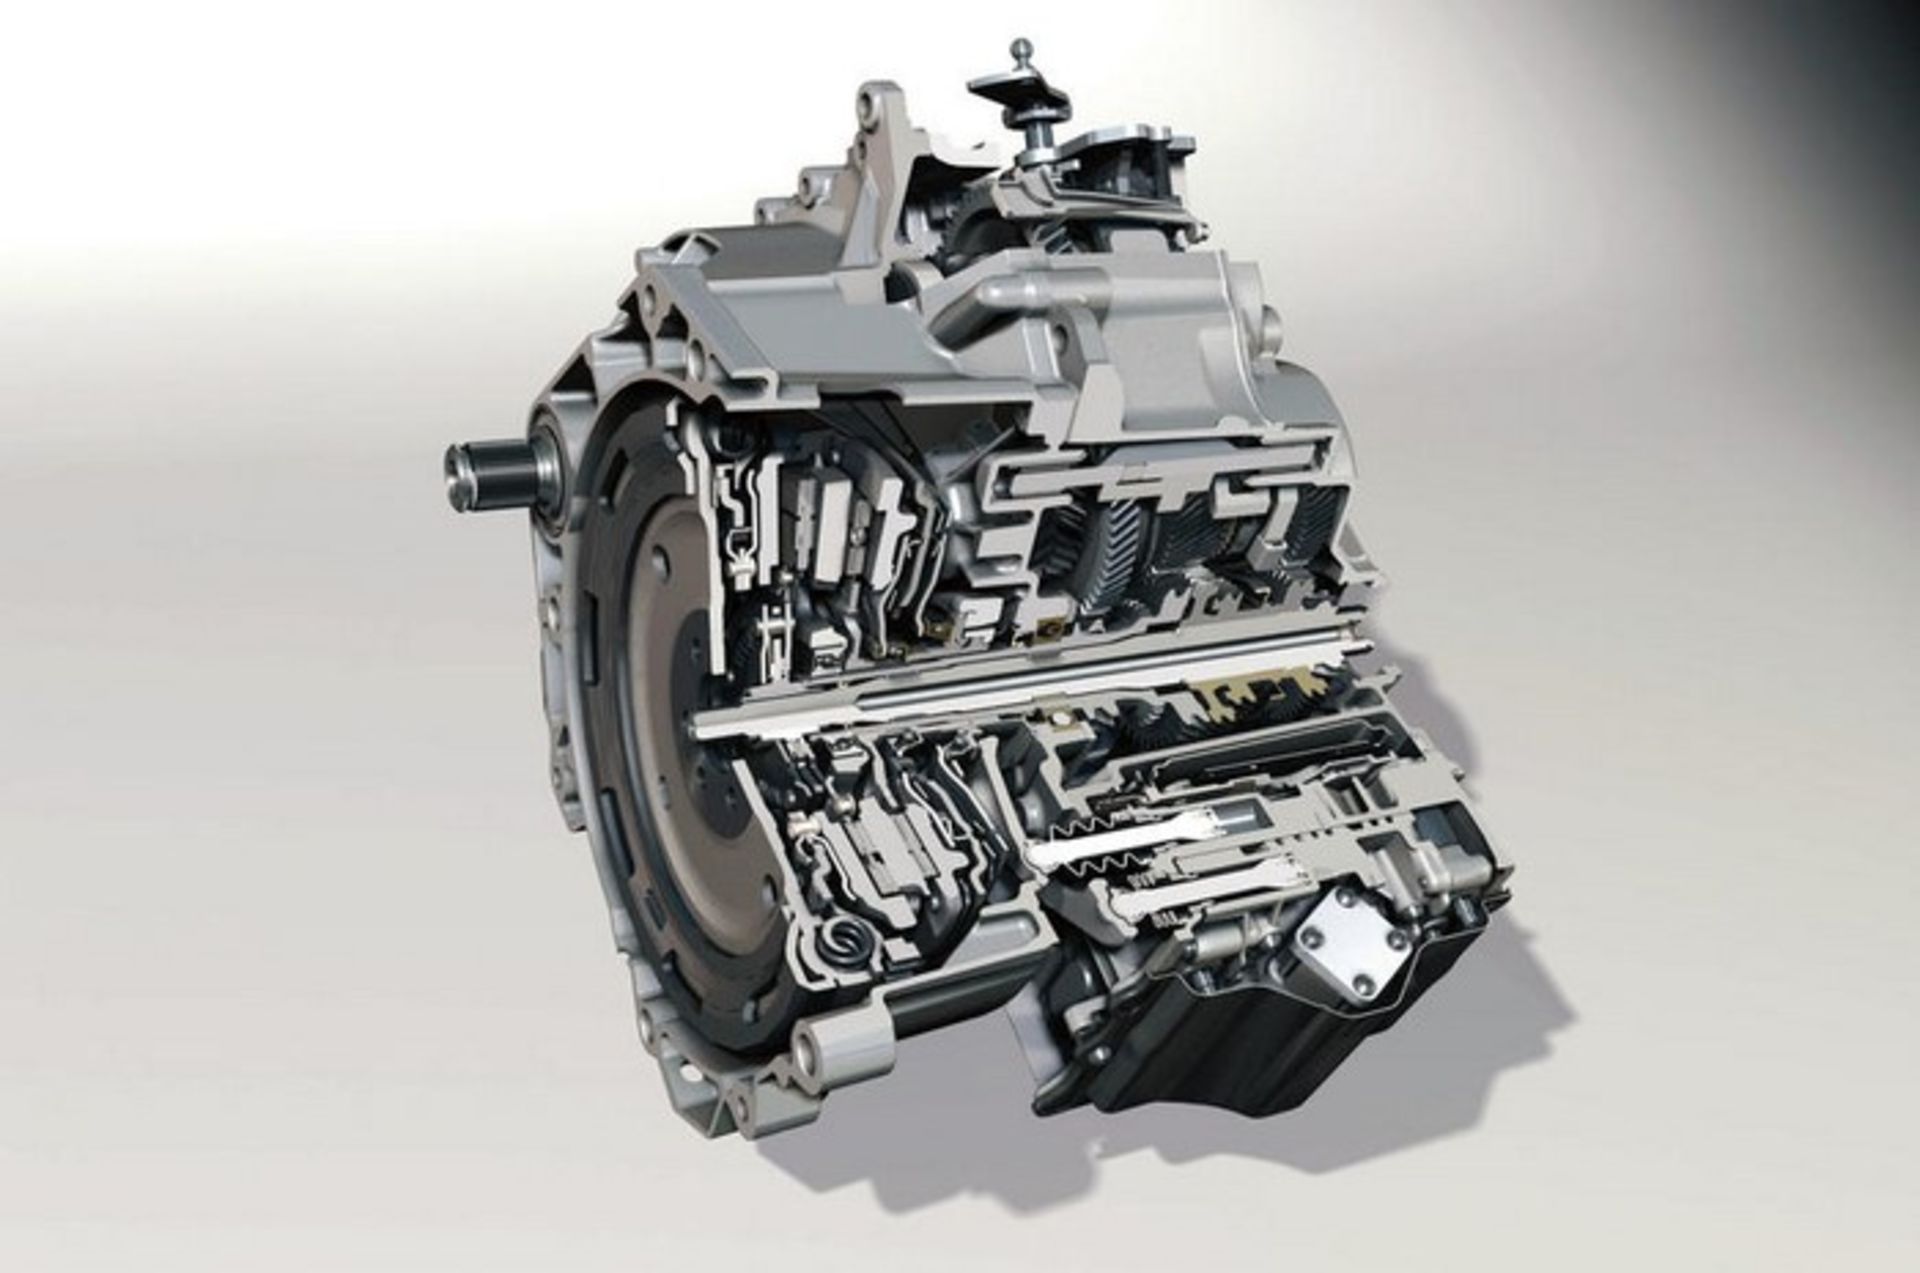 Volkswagen's DSG gearbox